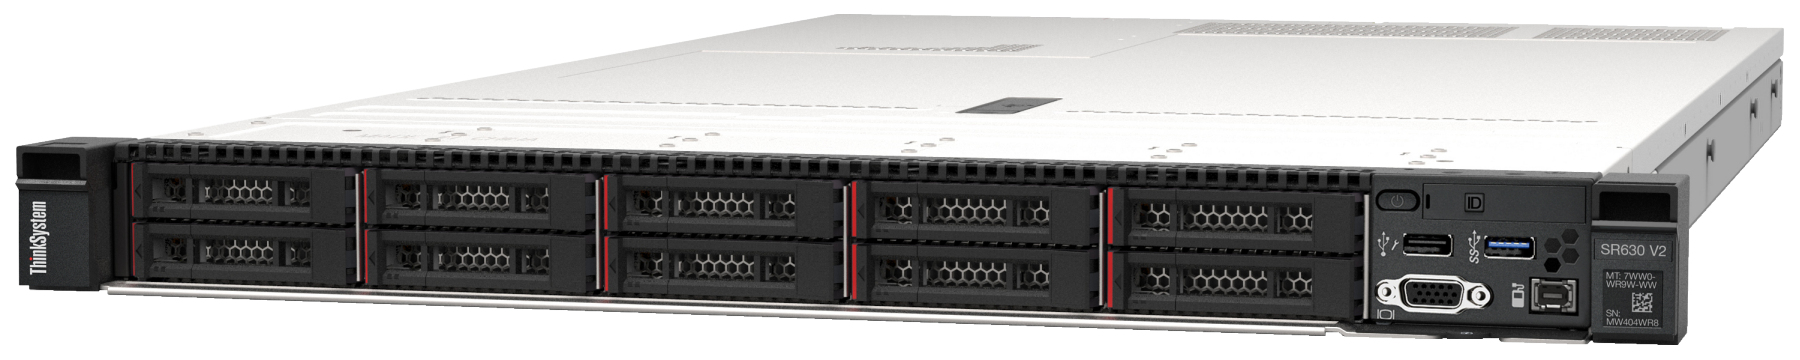 Сервер Lenovo ThinkSystem SR630 V2 (7Z71A05CEA). Фиксированная комплектация сервера